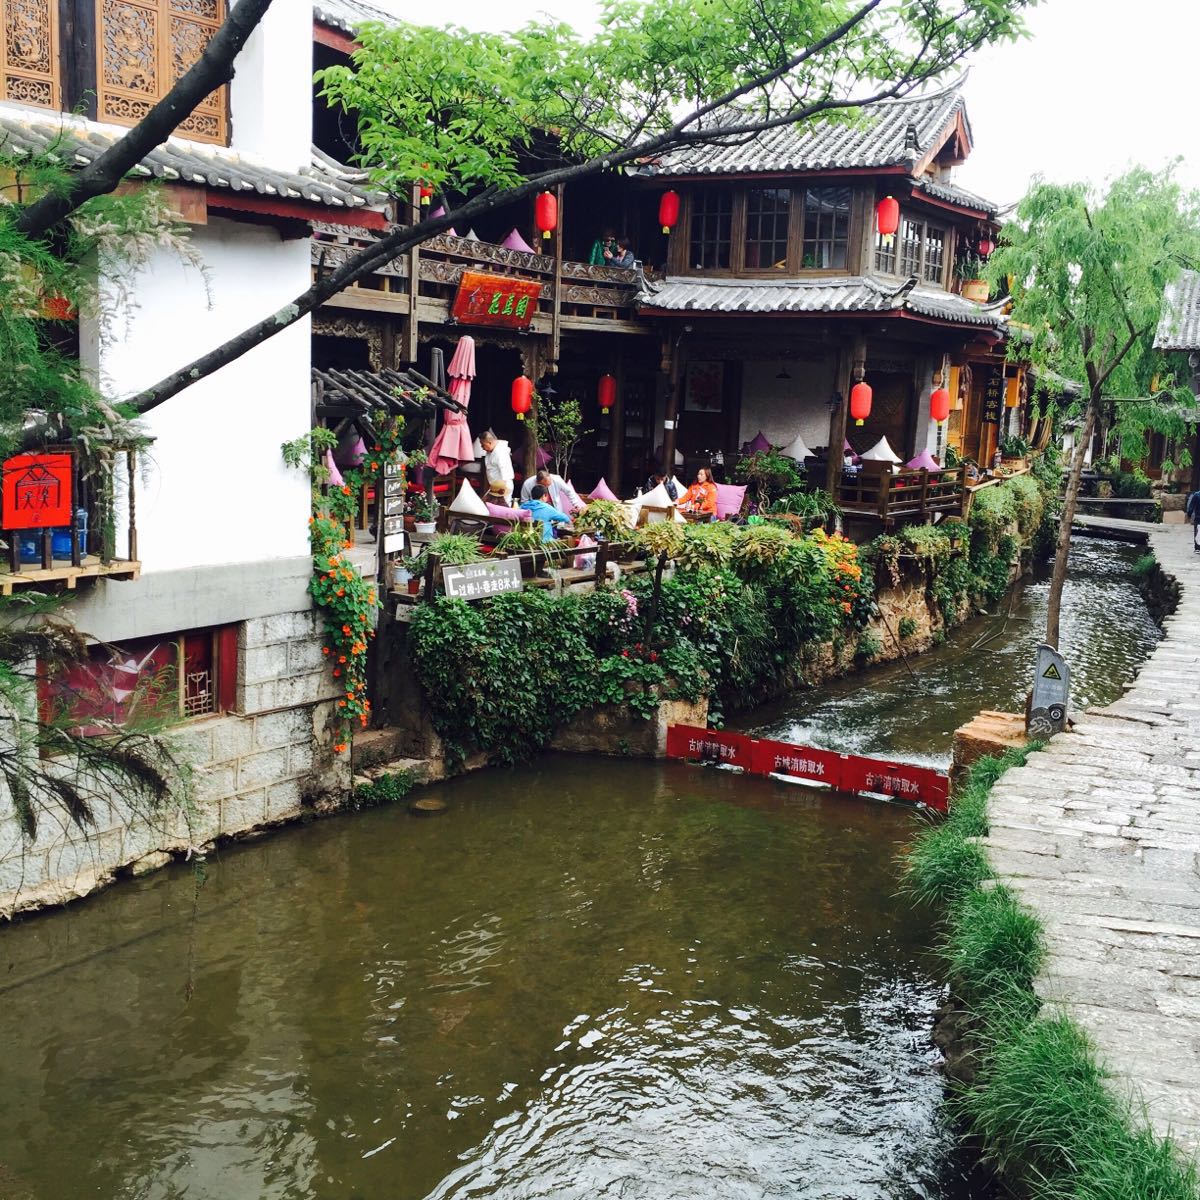 【携程攻略】丽江丽江古城景点,古色古香的古代小镇，很是喜欢、小桥流水，古城里没有什么特别的景点…